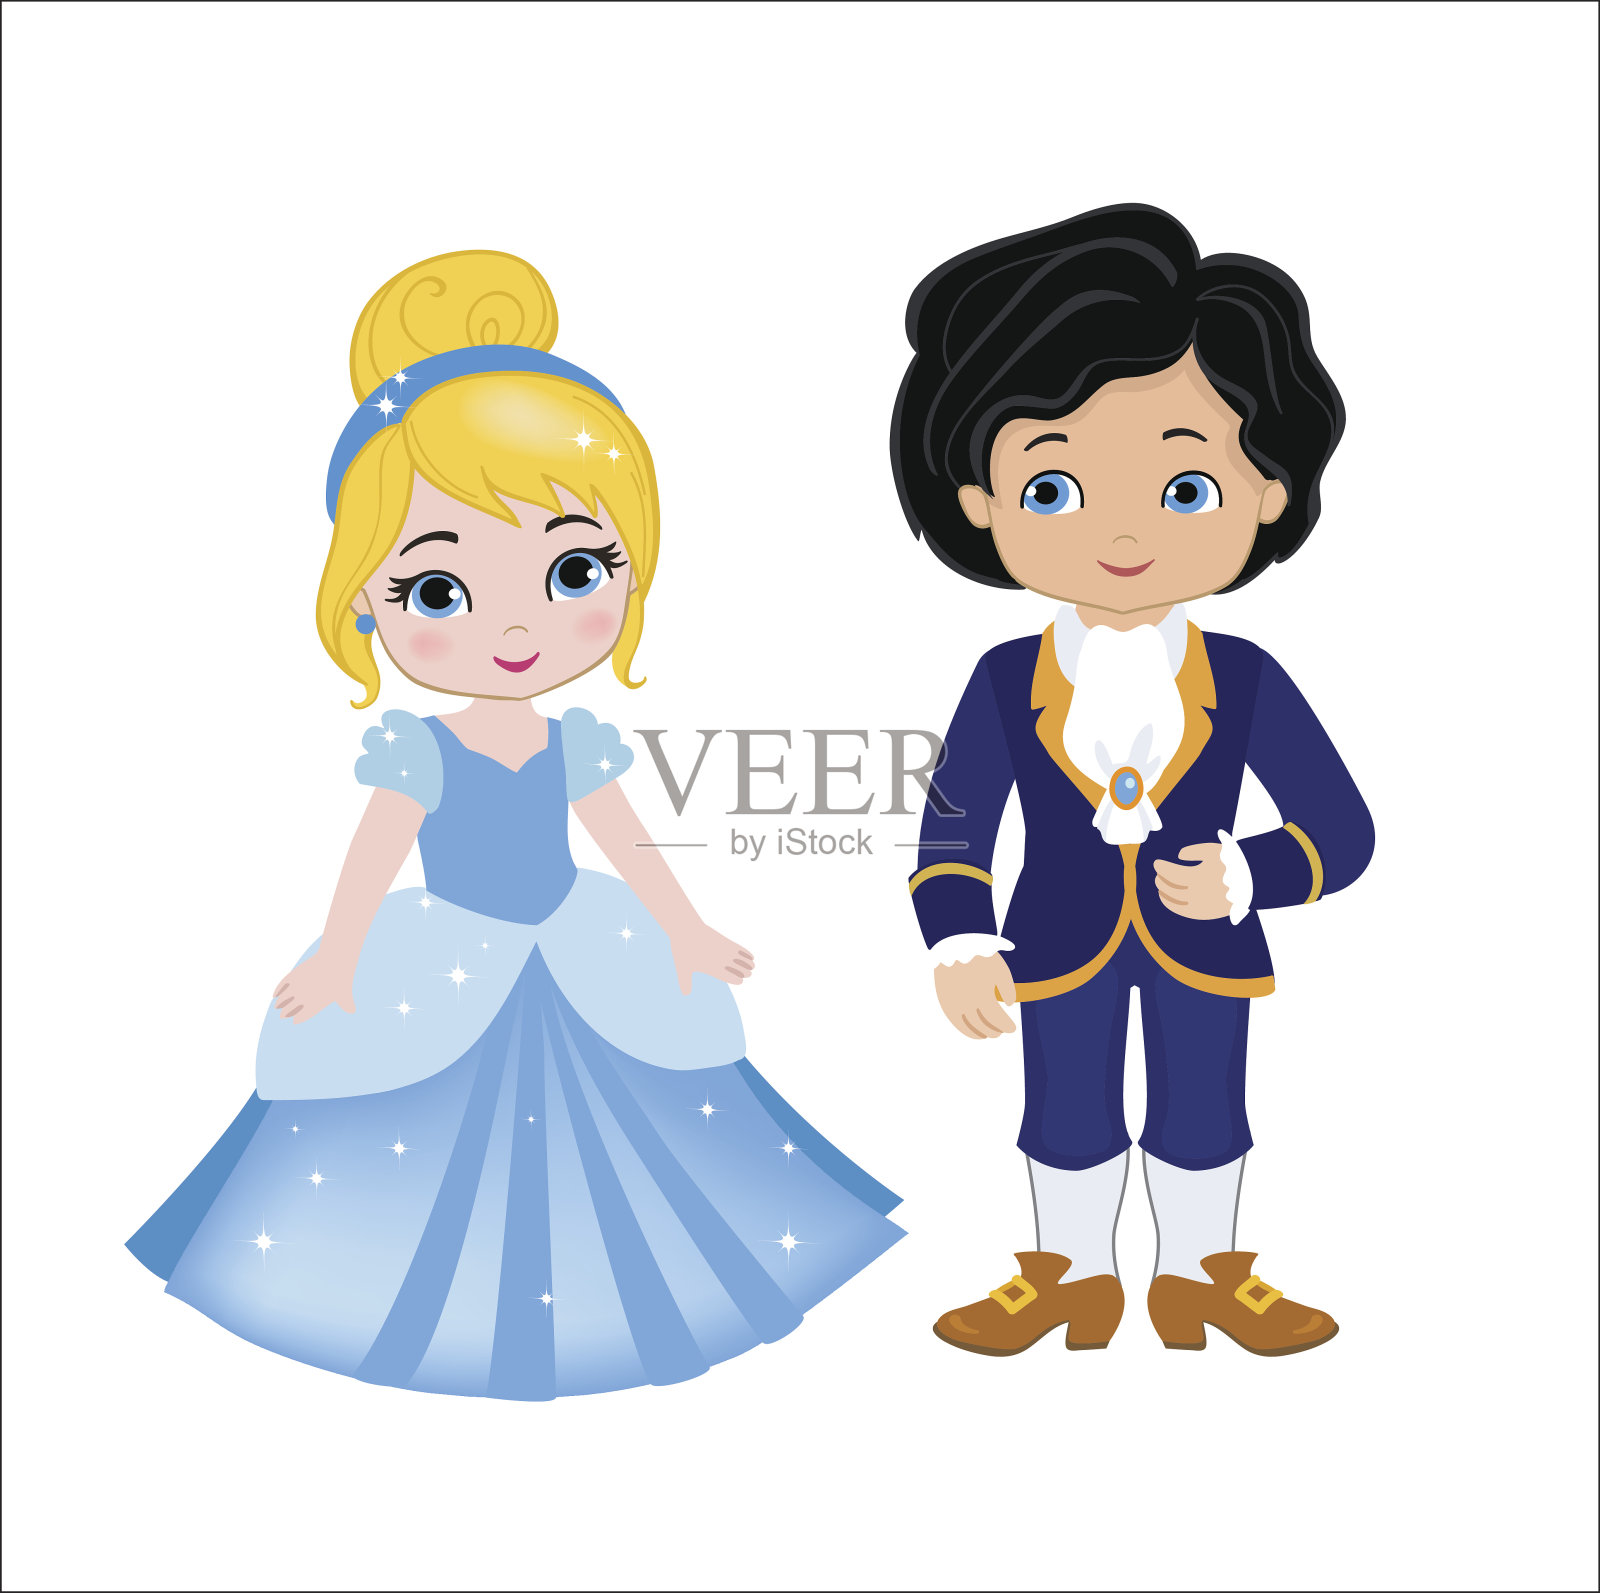 非常可爱的王子和公主的插图插画图片素材